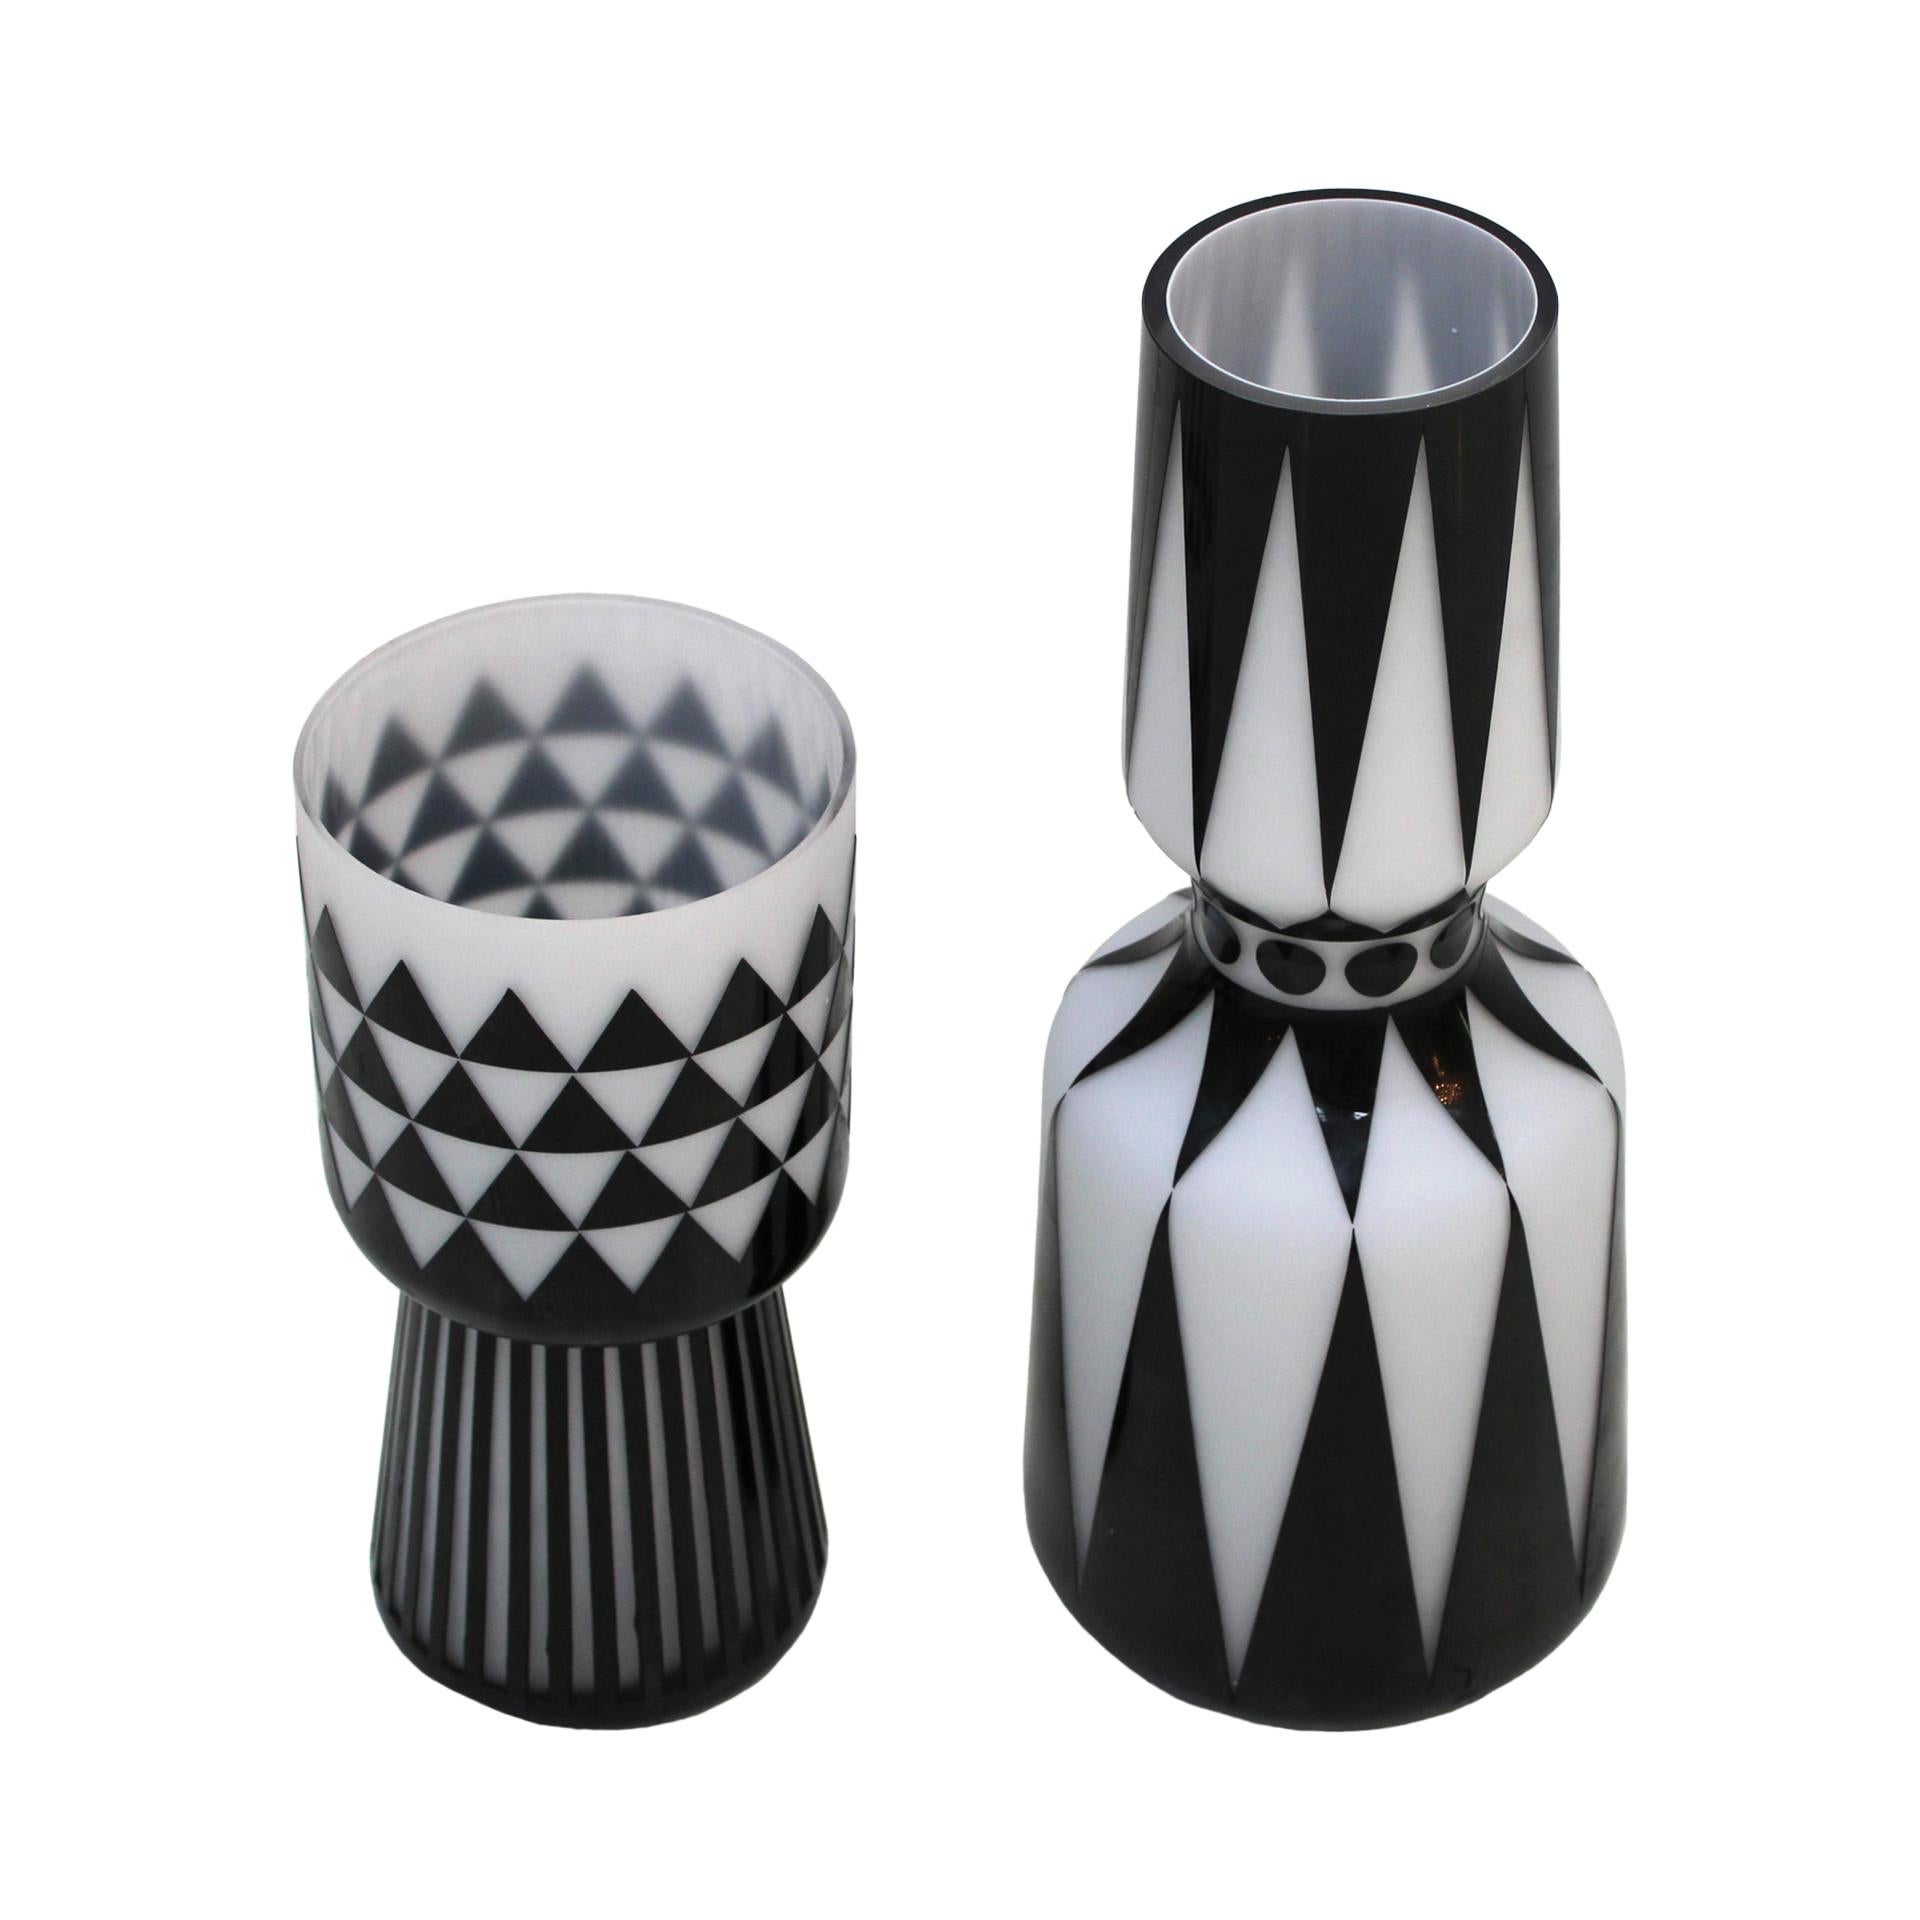 Ein Paar italienische Vasen, handgefertigt in den 80er Jahren. Mit handgeschnitzten geometrischen Motiven.

Maße: Bigli Vase: Durchmesser 17 x Höhe 44 cm

Kleine Vase: Durchmesser 14 x Höhe 31 cm.

Jeder Artikel, den LA Studio anbietet, wird von